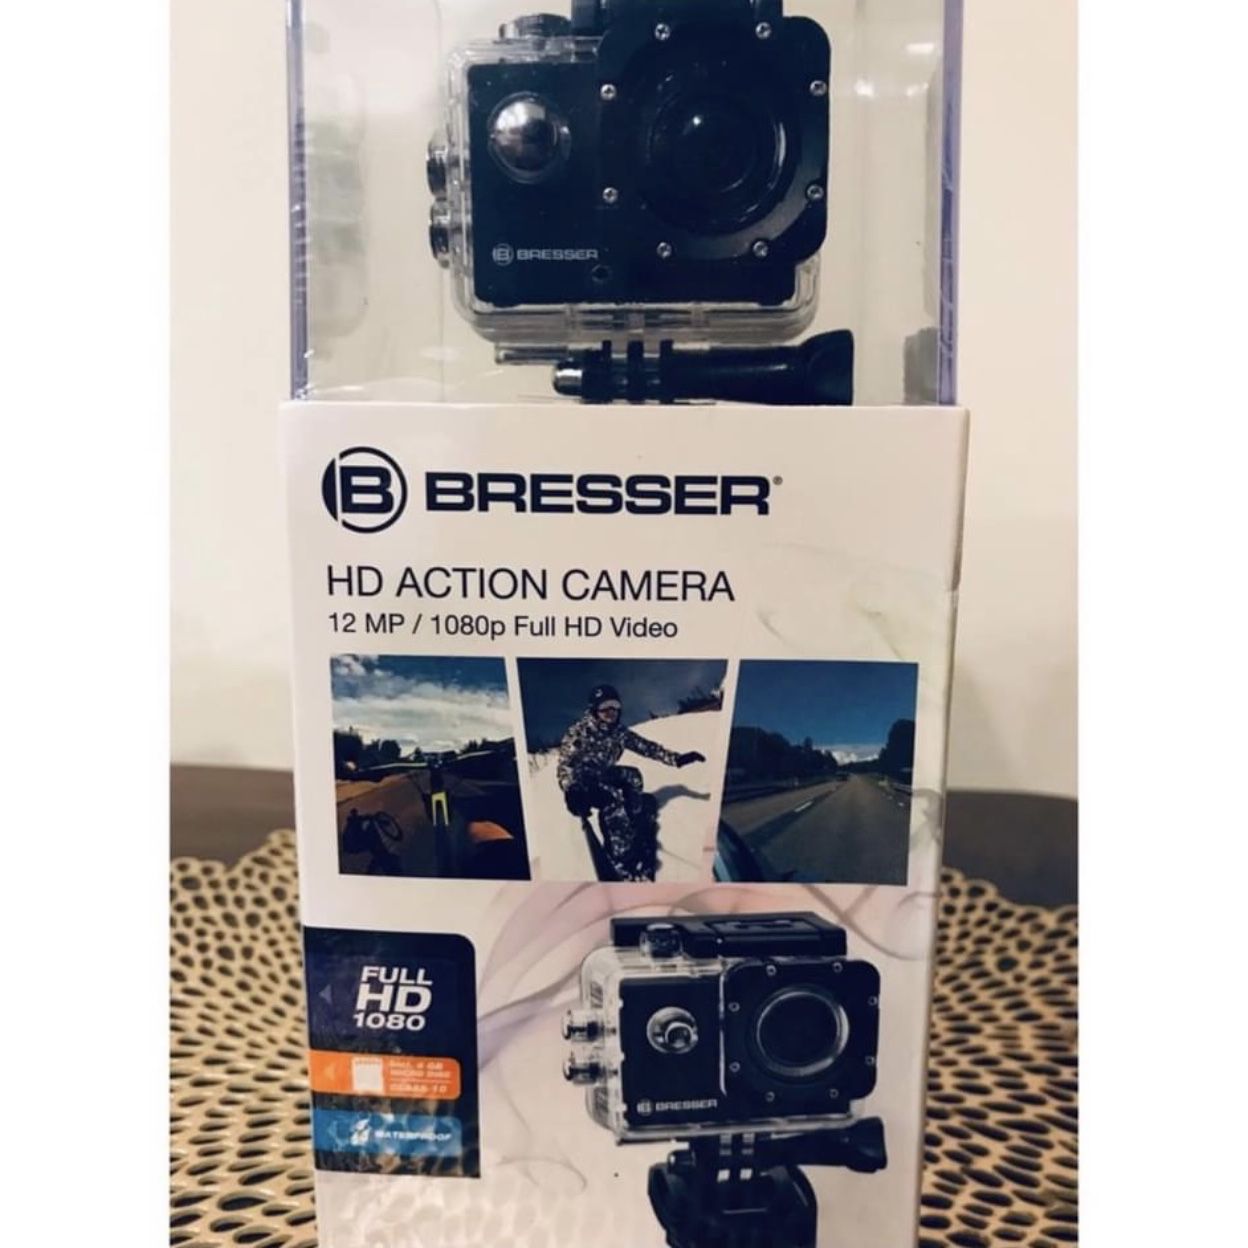 Bresser HD Action Camera